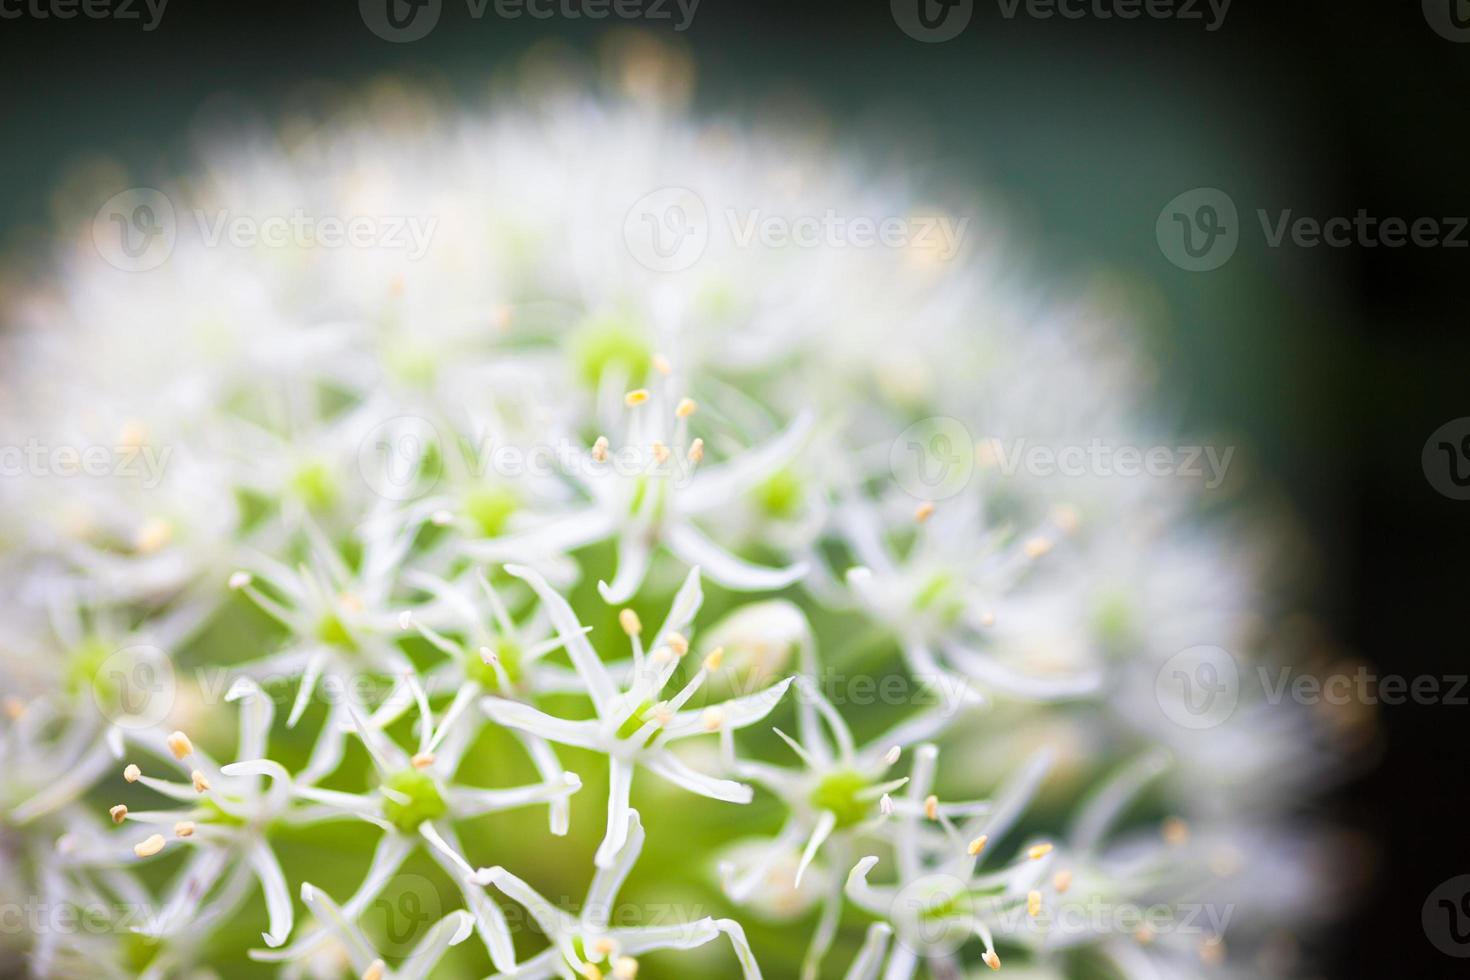 flor de cebolla blanca ornamental (allium) foto